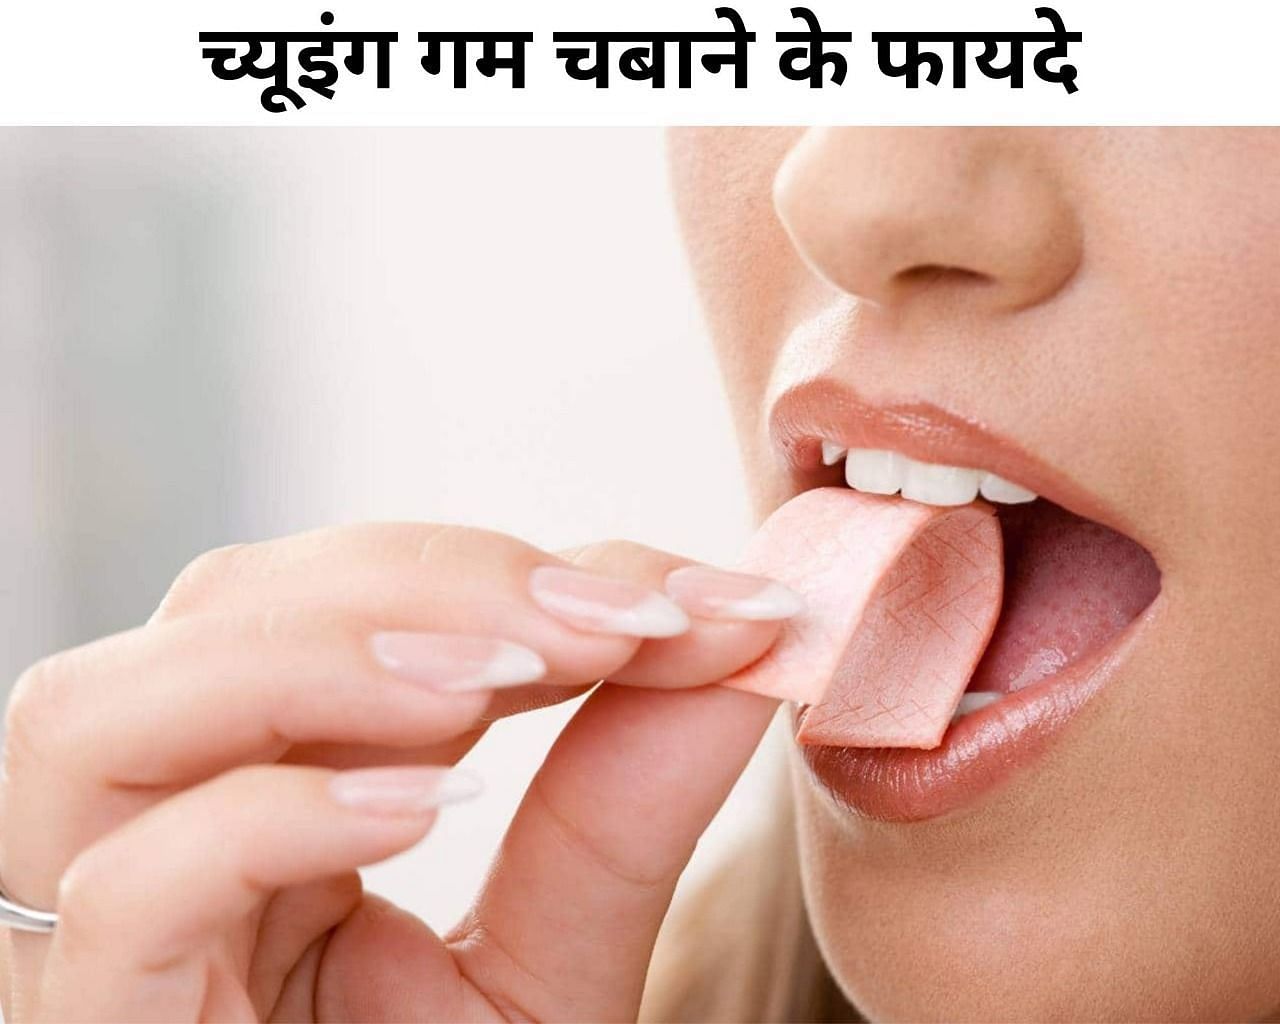 च्यूइंग गम चबाने के फायदे (फोटो - sportskeeda hindi)